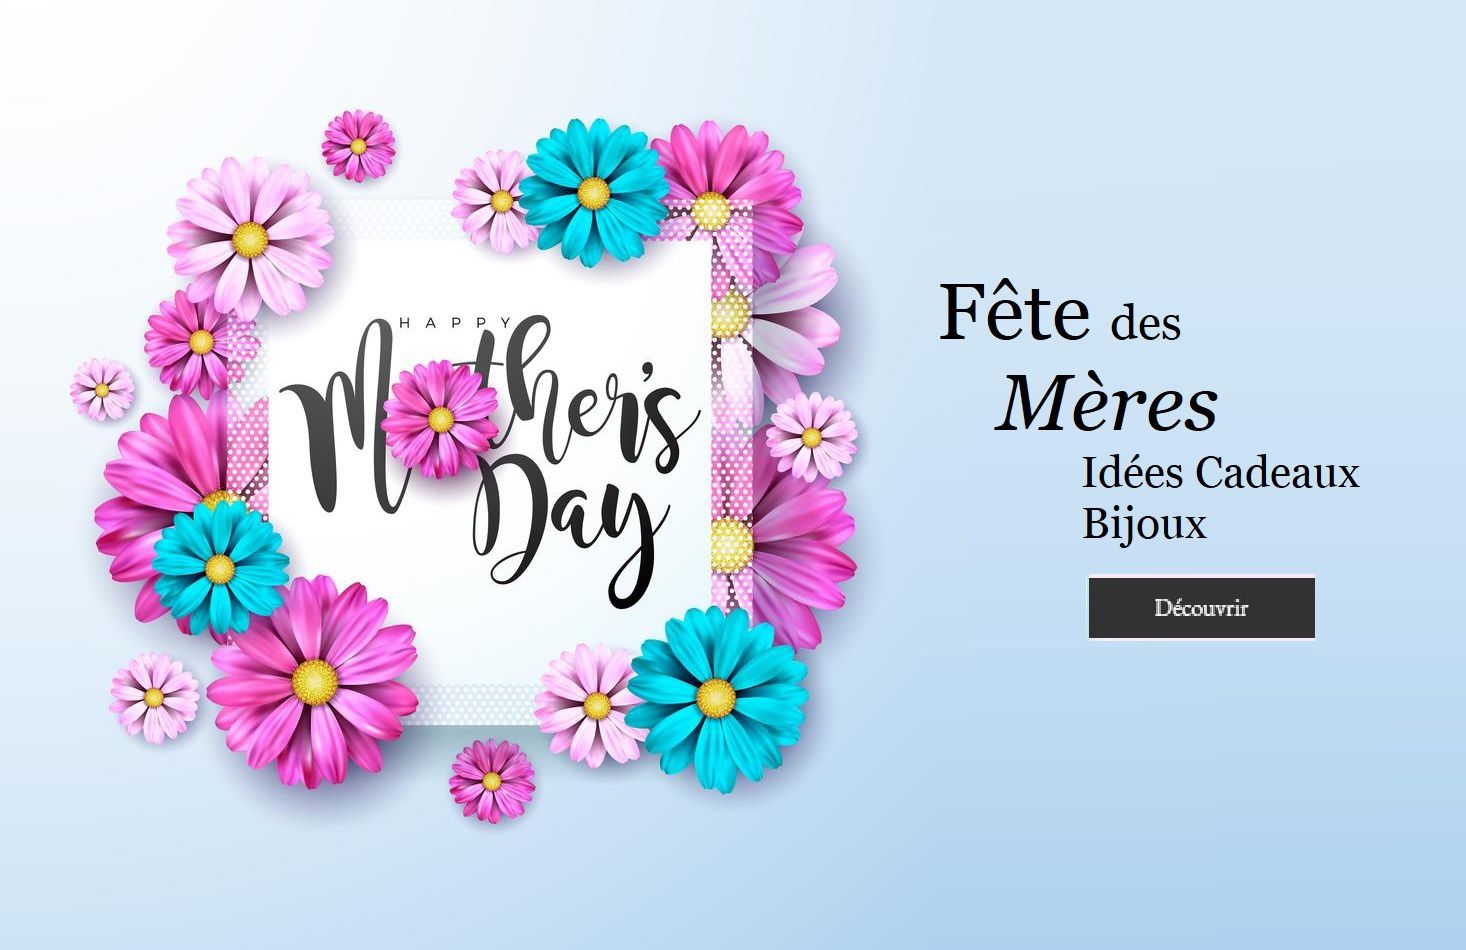 Rien n'est trop beau pour votre maman, Trouvez le bijou ou l'accessoire idéal pour lui souhaiter dignement la fête des mères.